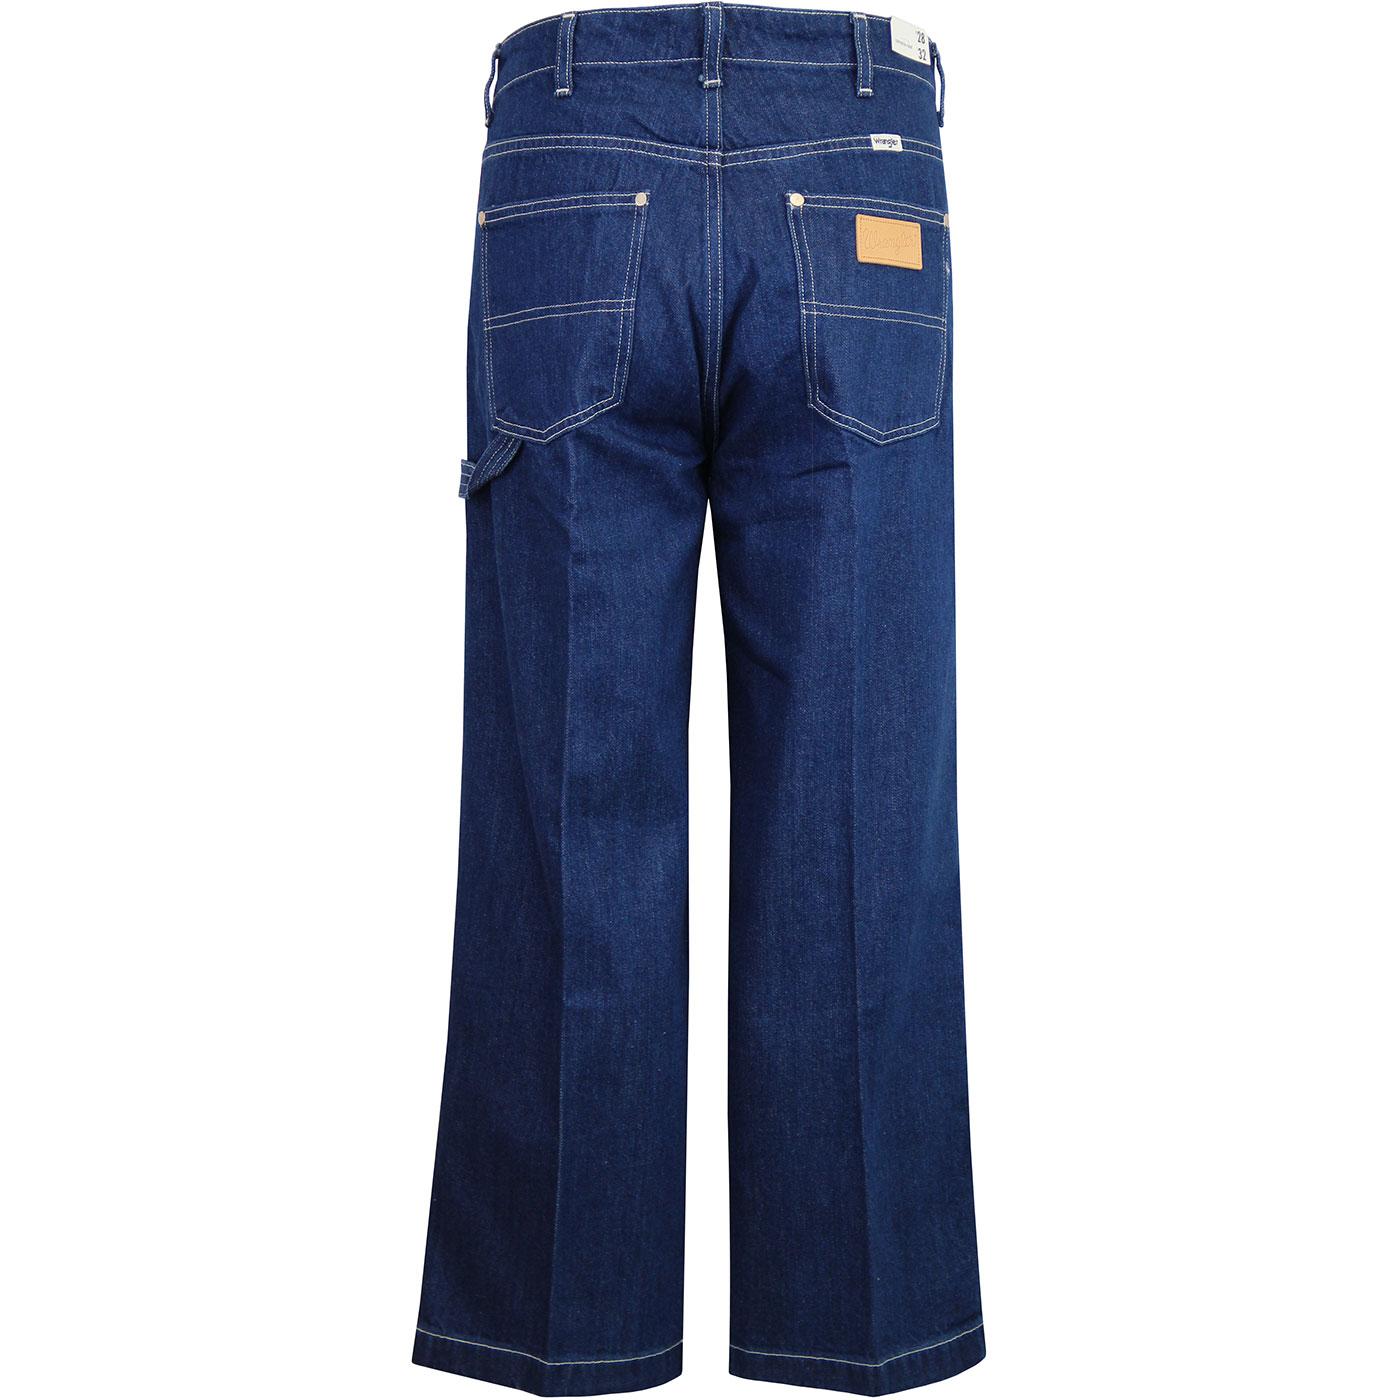 WRANGLER Women's Carpenter Pants Retro 70s Jeans